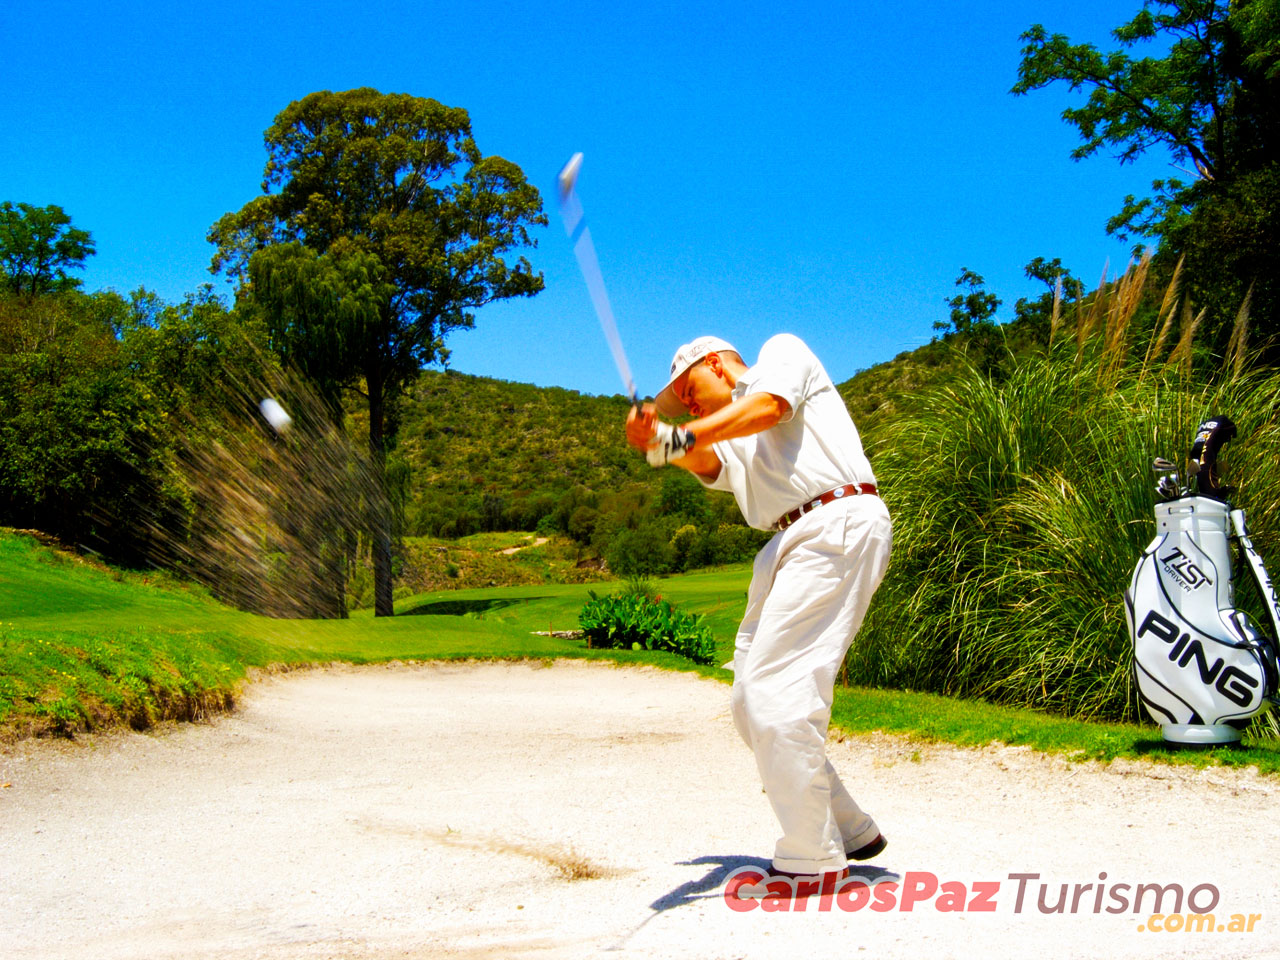 Golf en Carlos Paz - Imagen: Carlospazturismo.com.ar